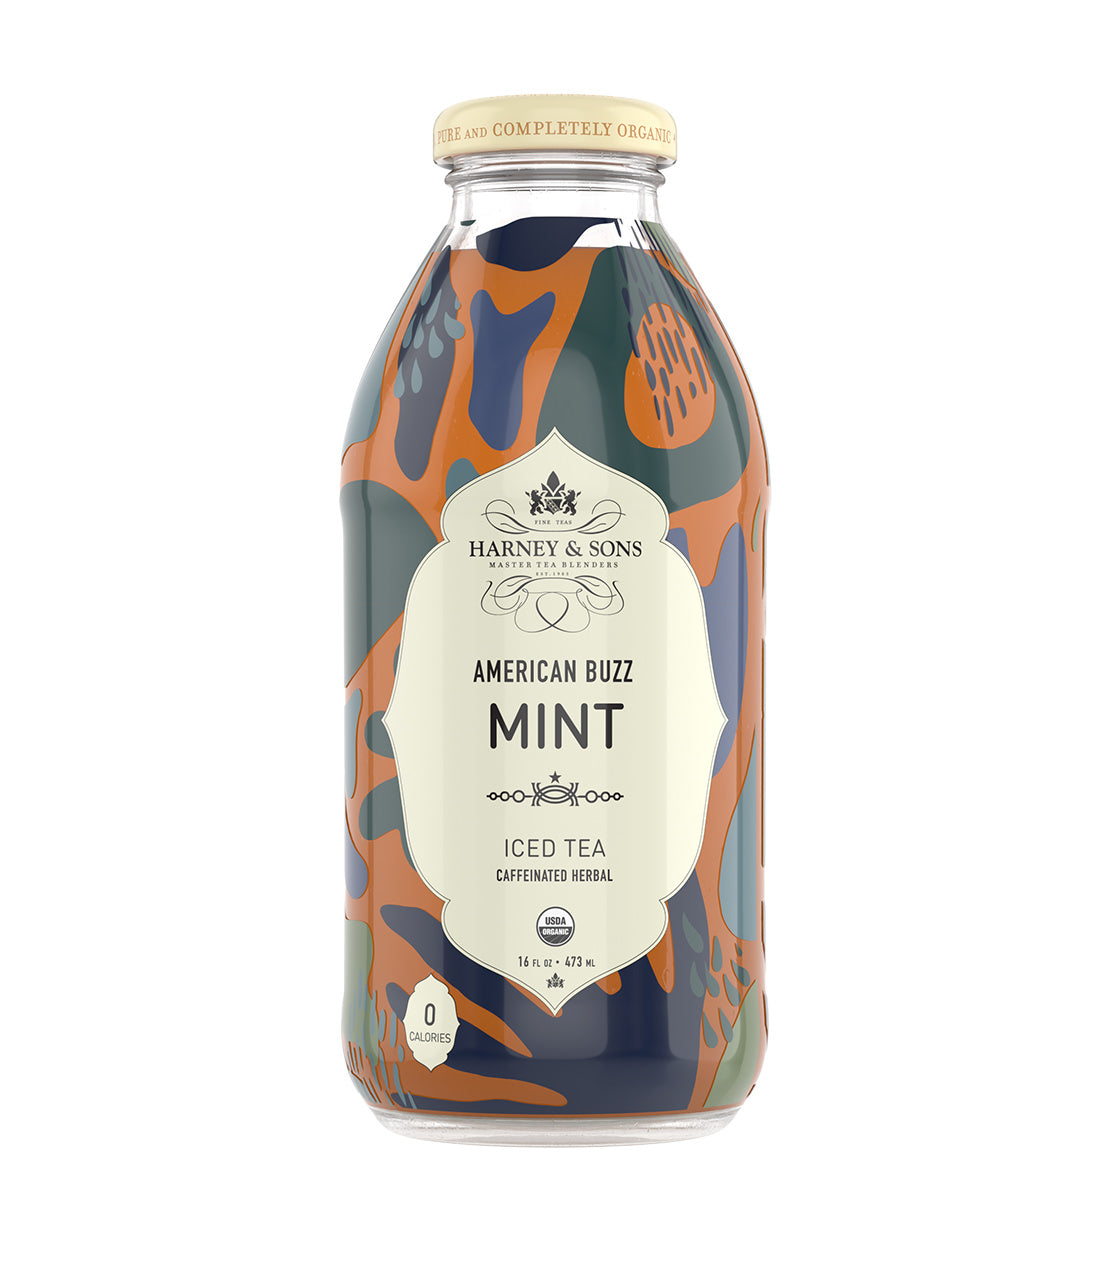 American Buzz Mint Iced Tea - 16 oz. Bottle Case of 12 Bottles - Harney & Sons Fine Teas